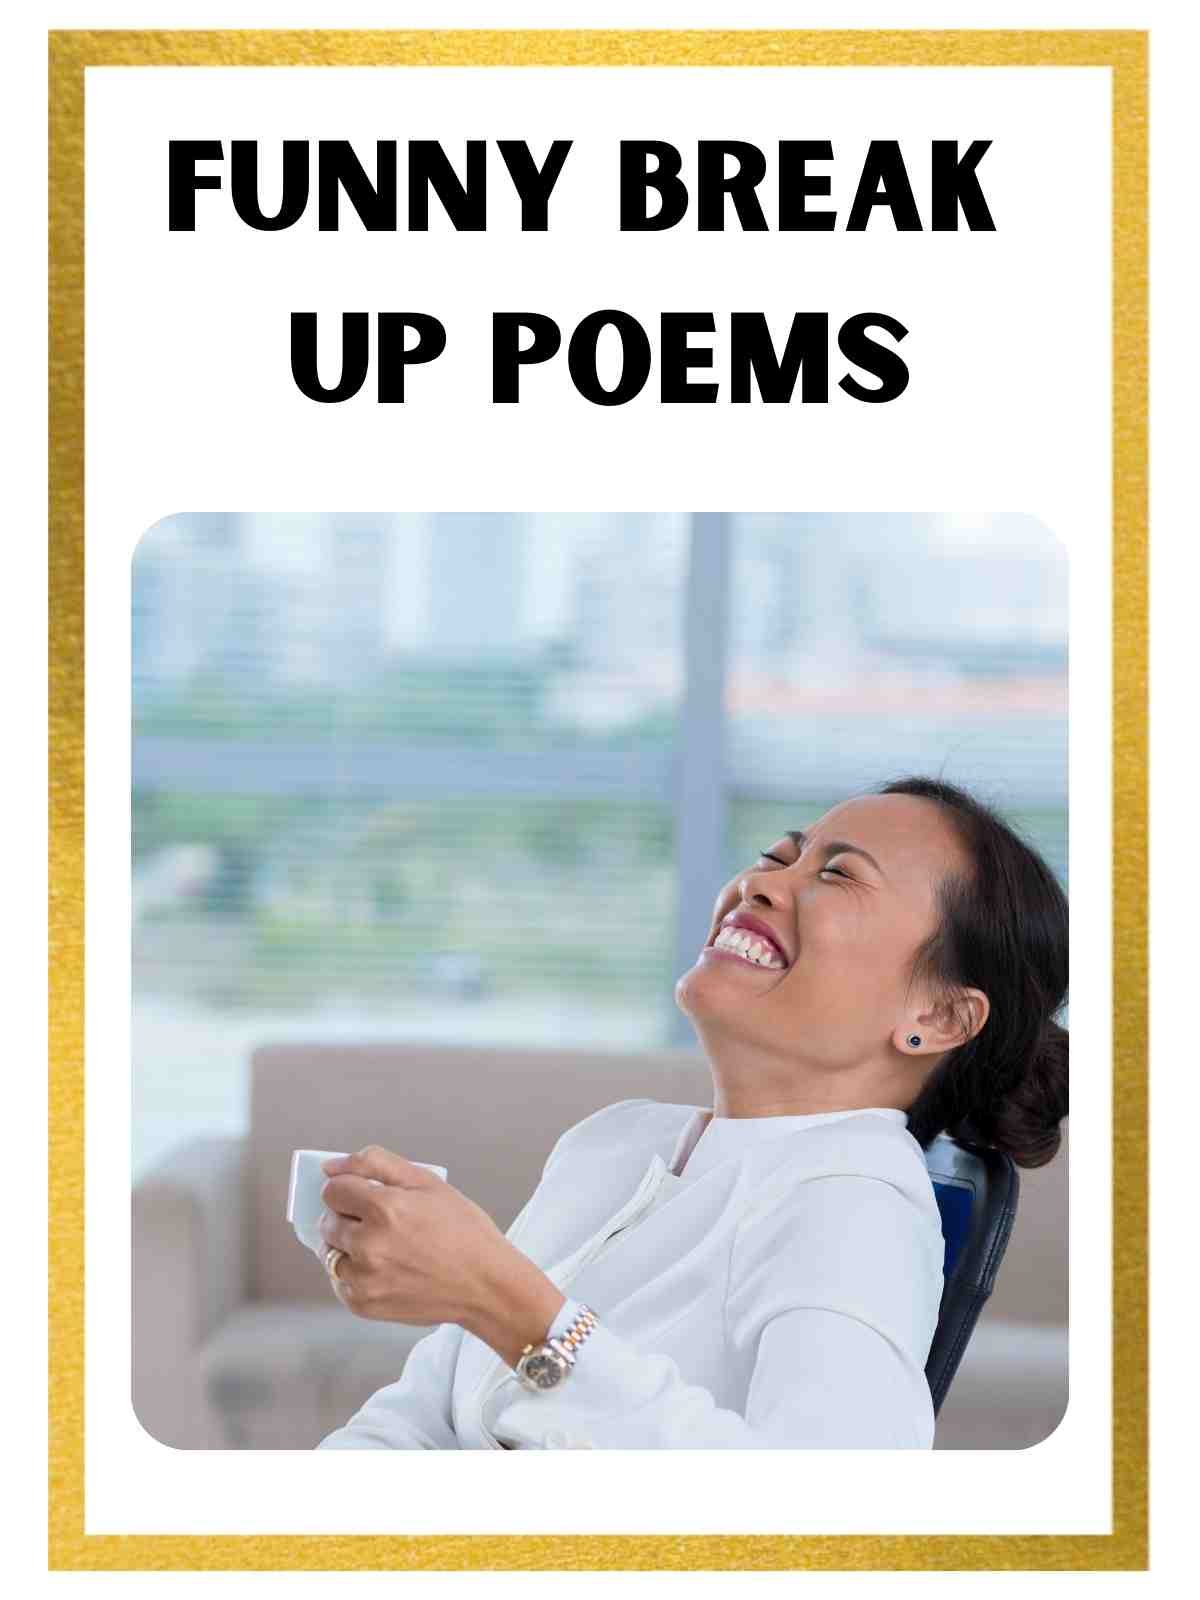 Funny break up boyfriend poems